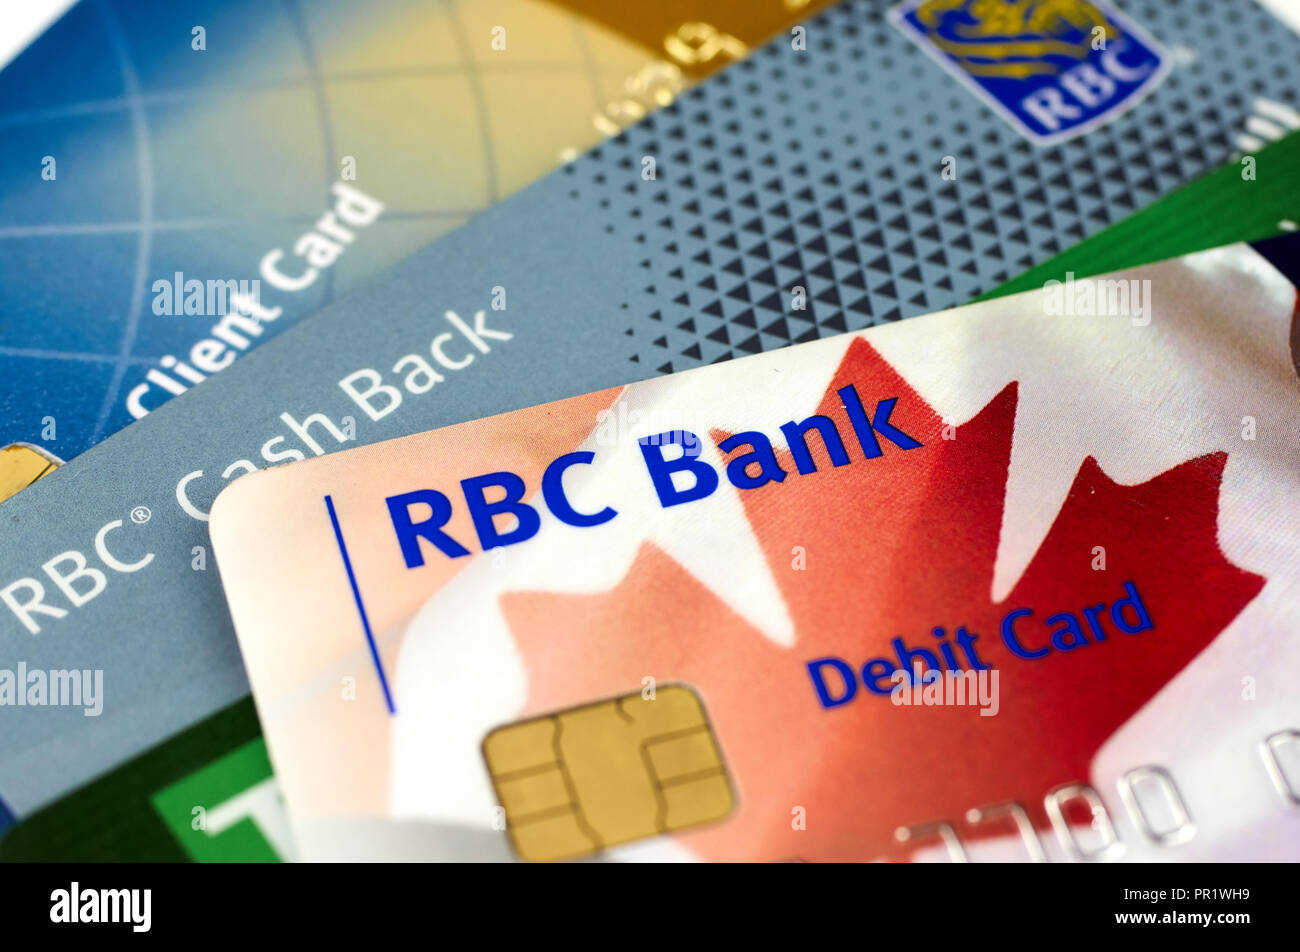 Mastercard Credit Cards National Bank